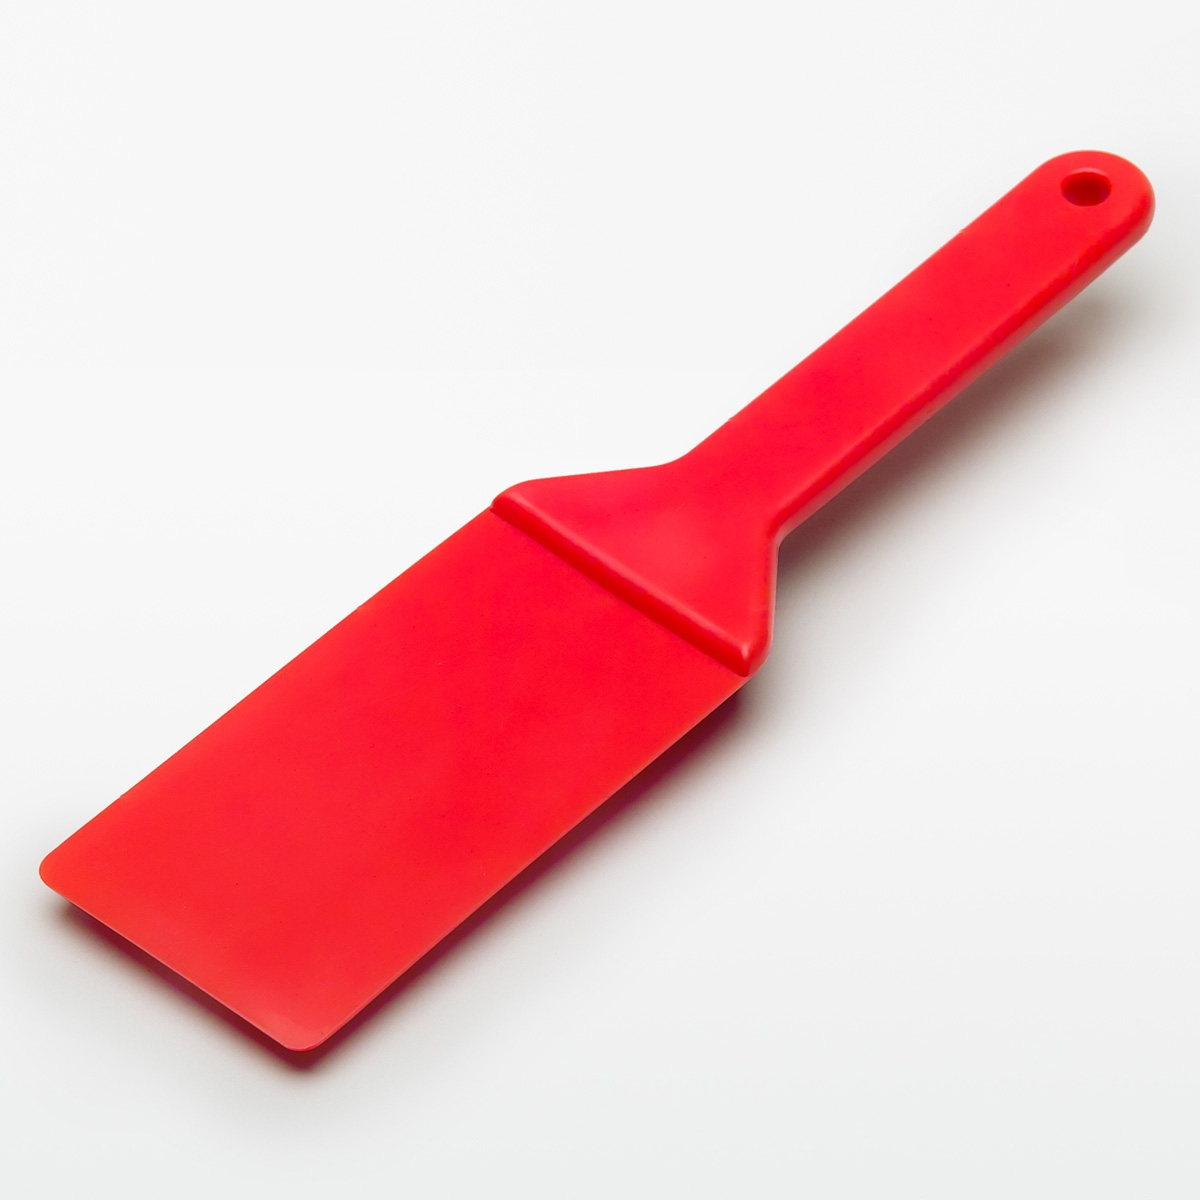 Breiter 27,5 cm Spachtel aus Kunststoff Farbspachtel Plastisolfarbe Siebdruck 